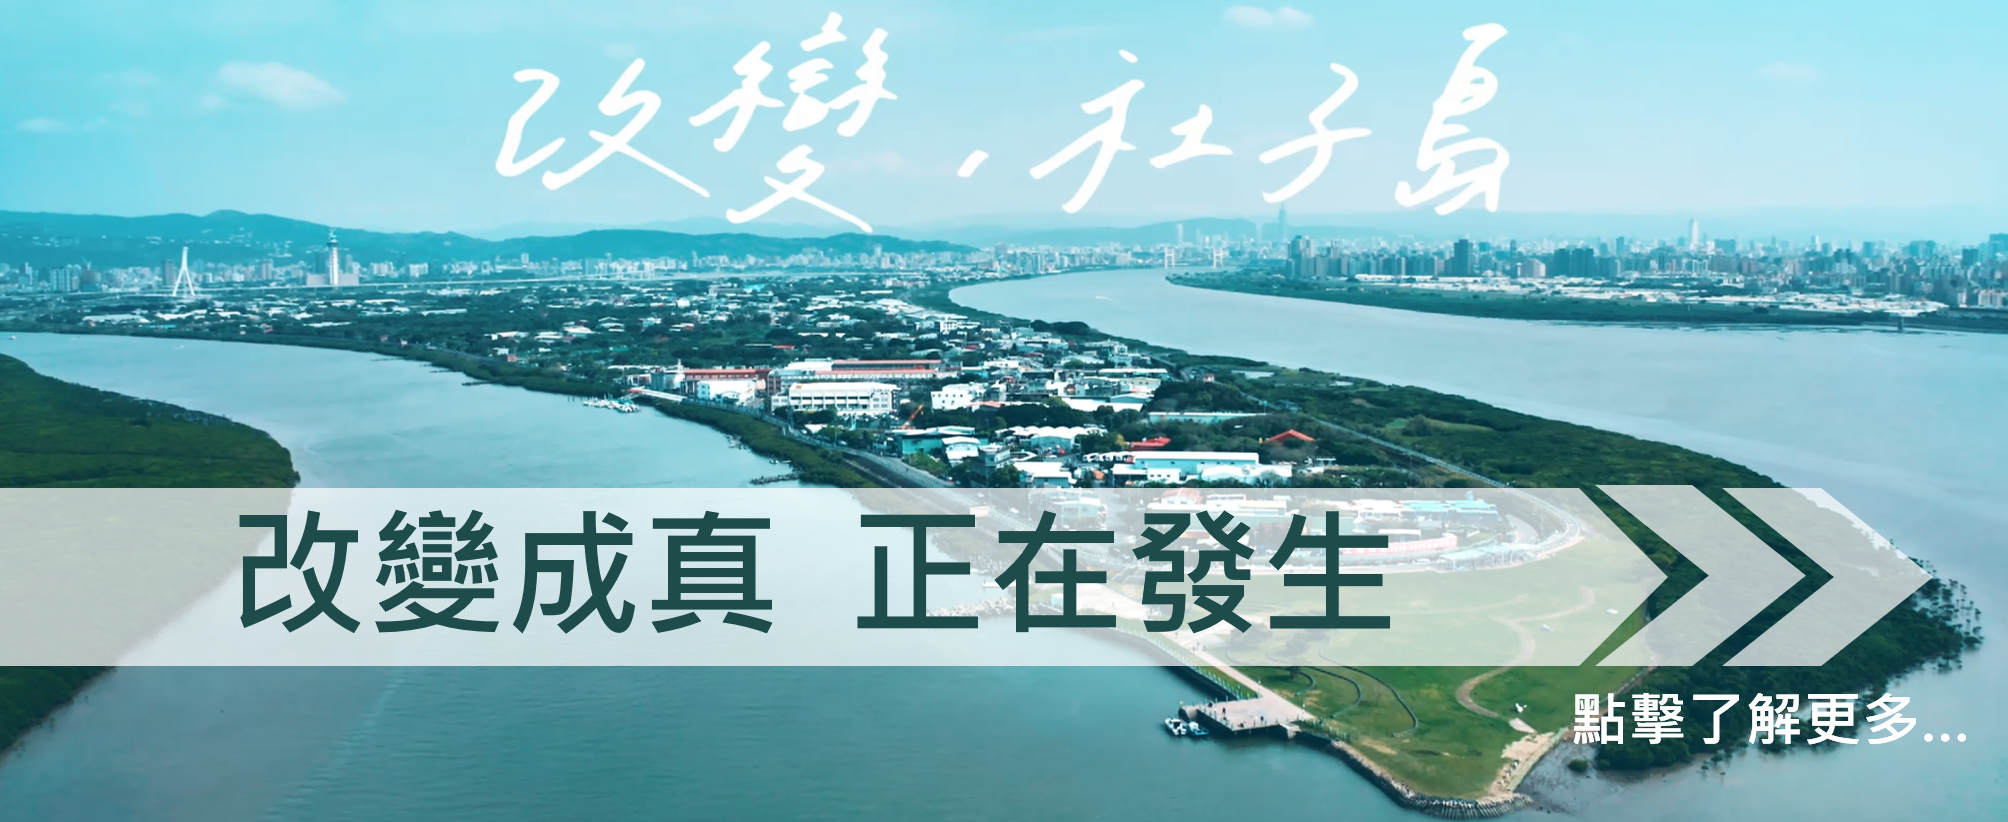 社子島開發政策宣傳影片